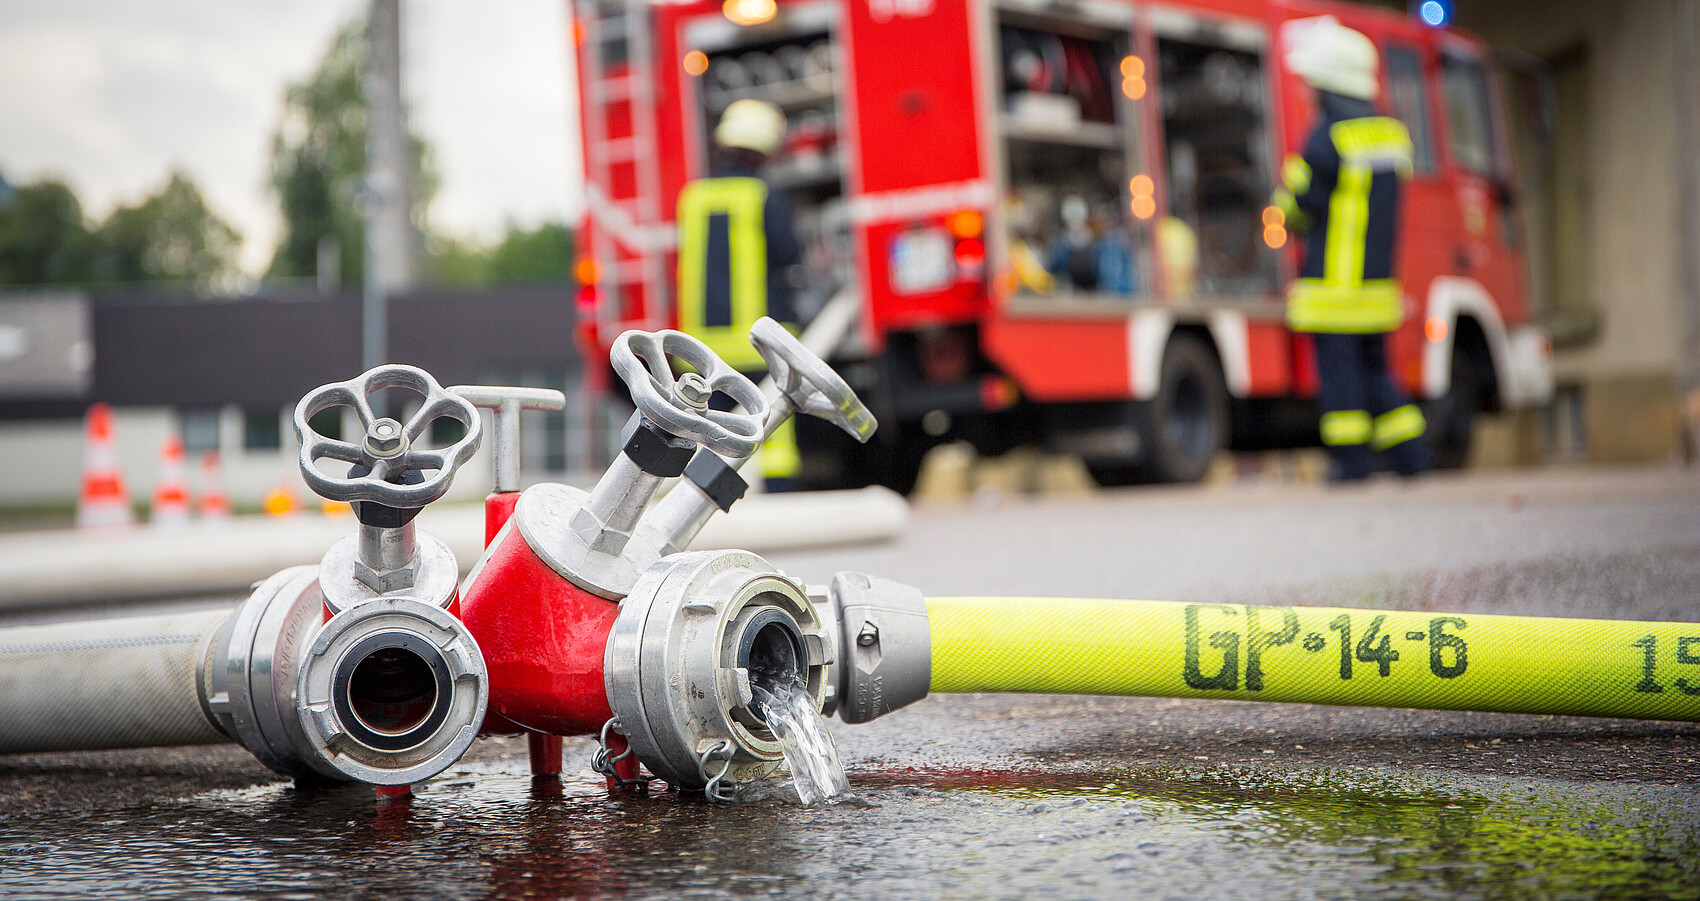 Bild zeigt Feuerwehrschlauch mit Feuerwehrfahrzeug im Hintergrund